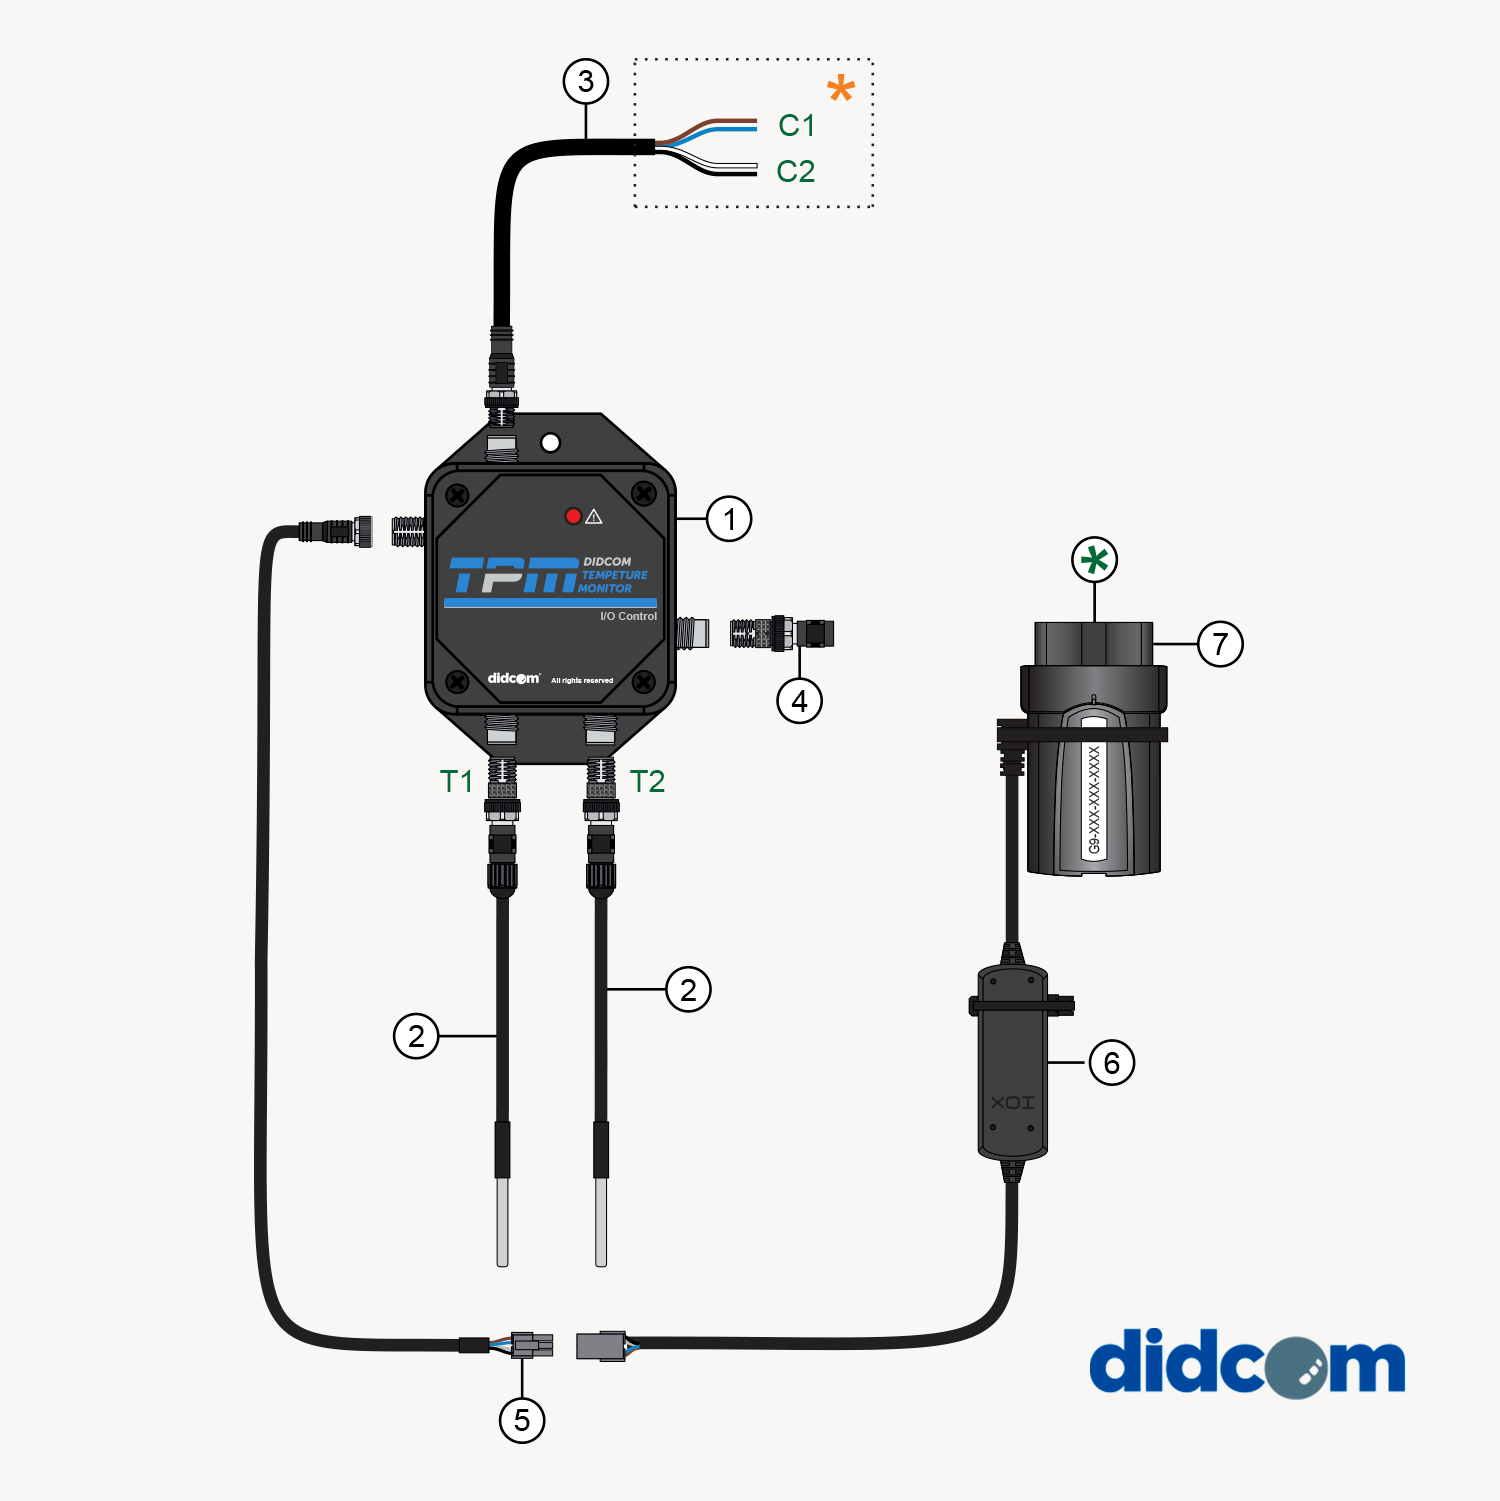 Didcom Temperature Monitoring